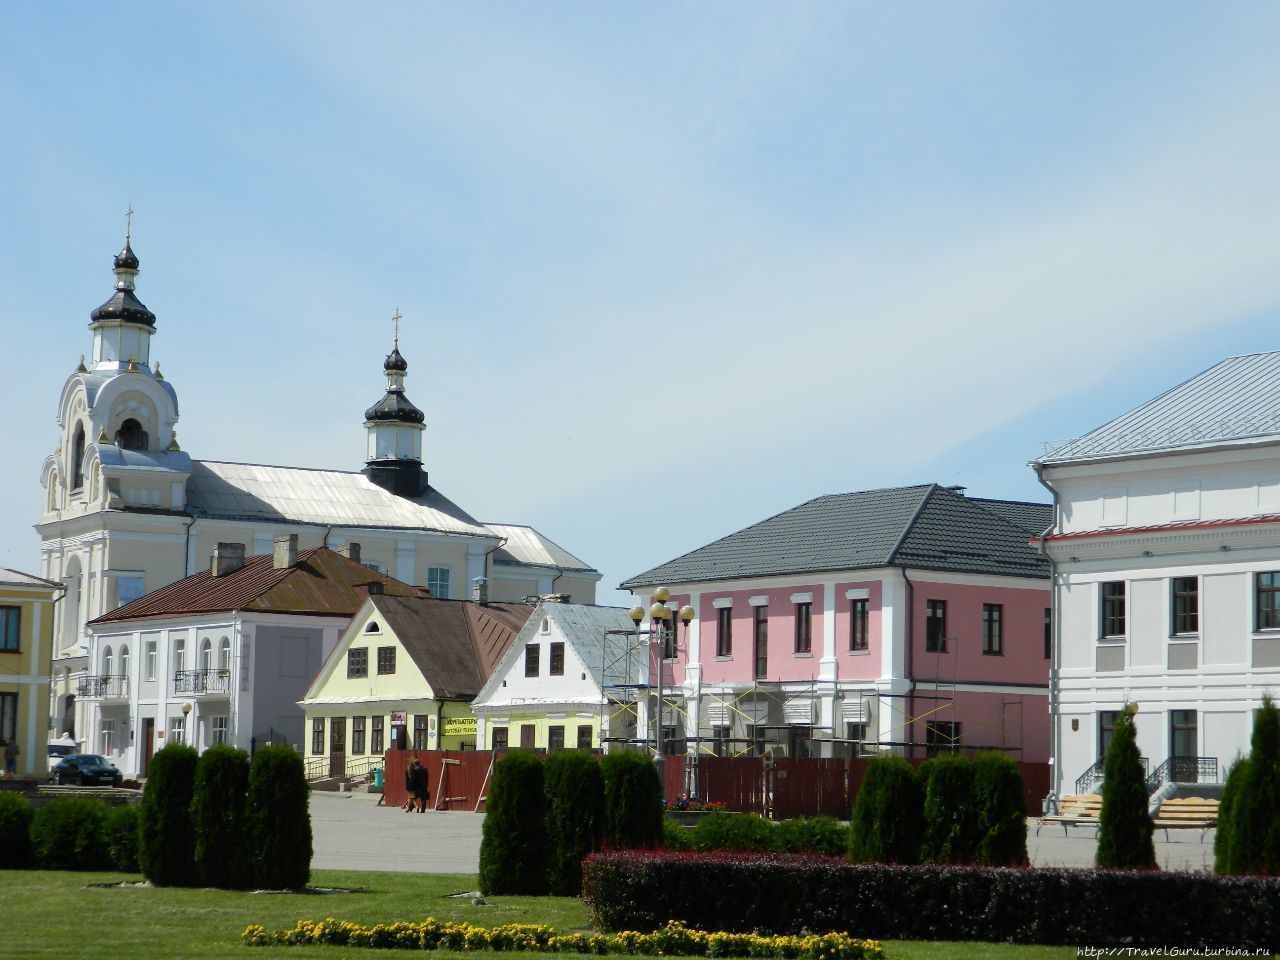 Площадь Ленина, центральная площадь города Навагрудак, Беларусь